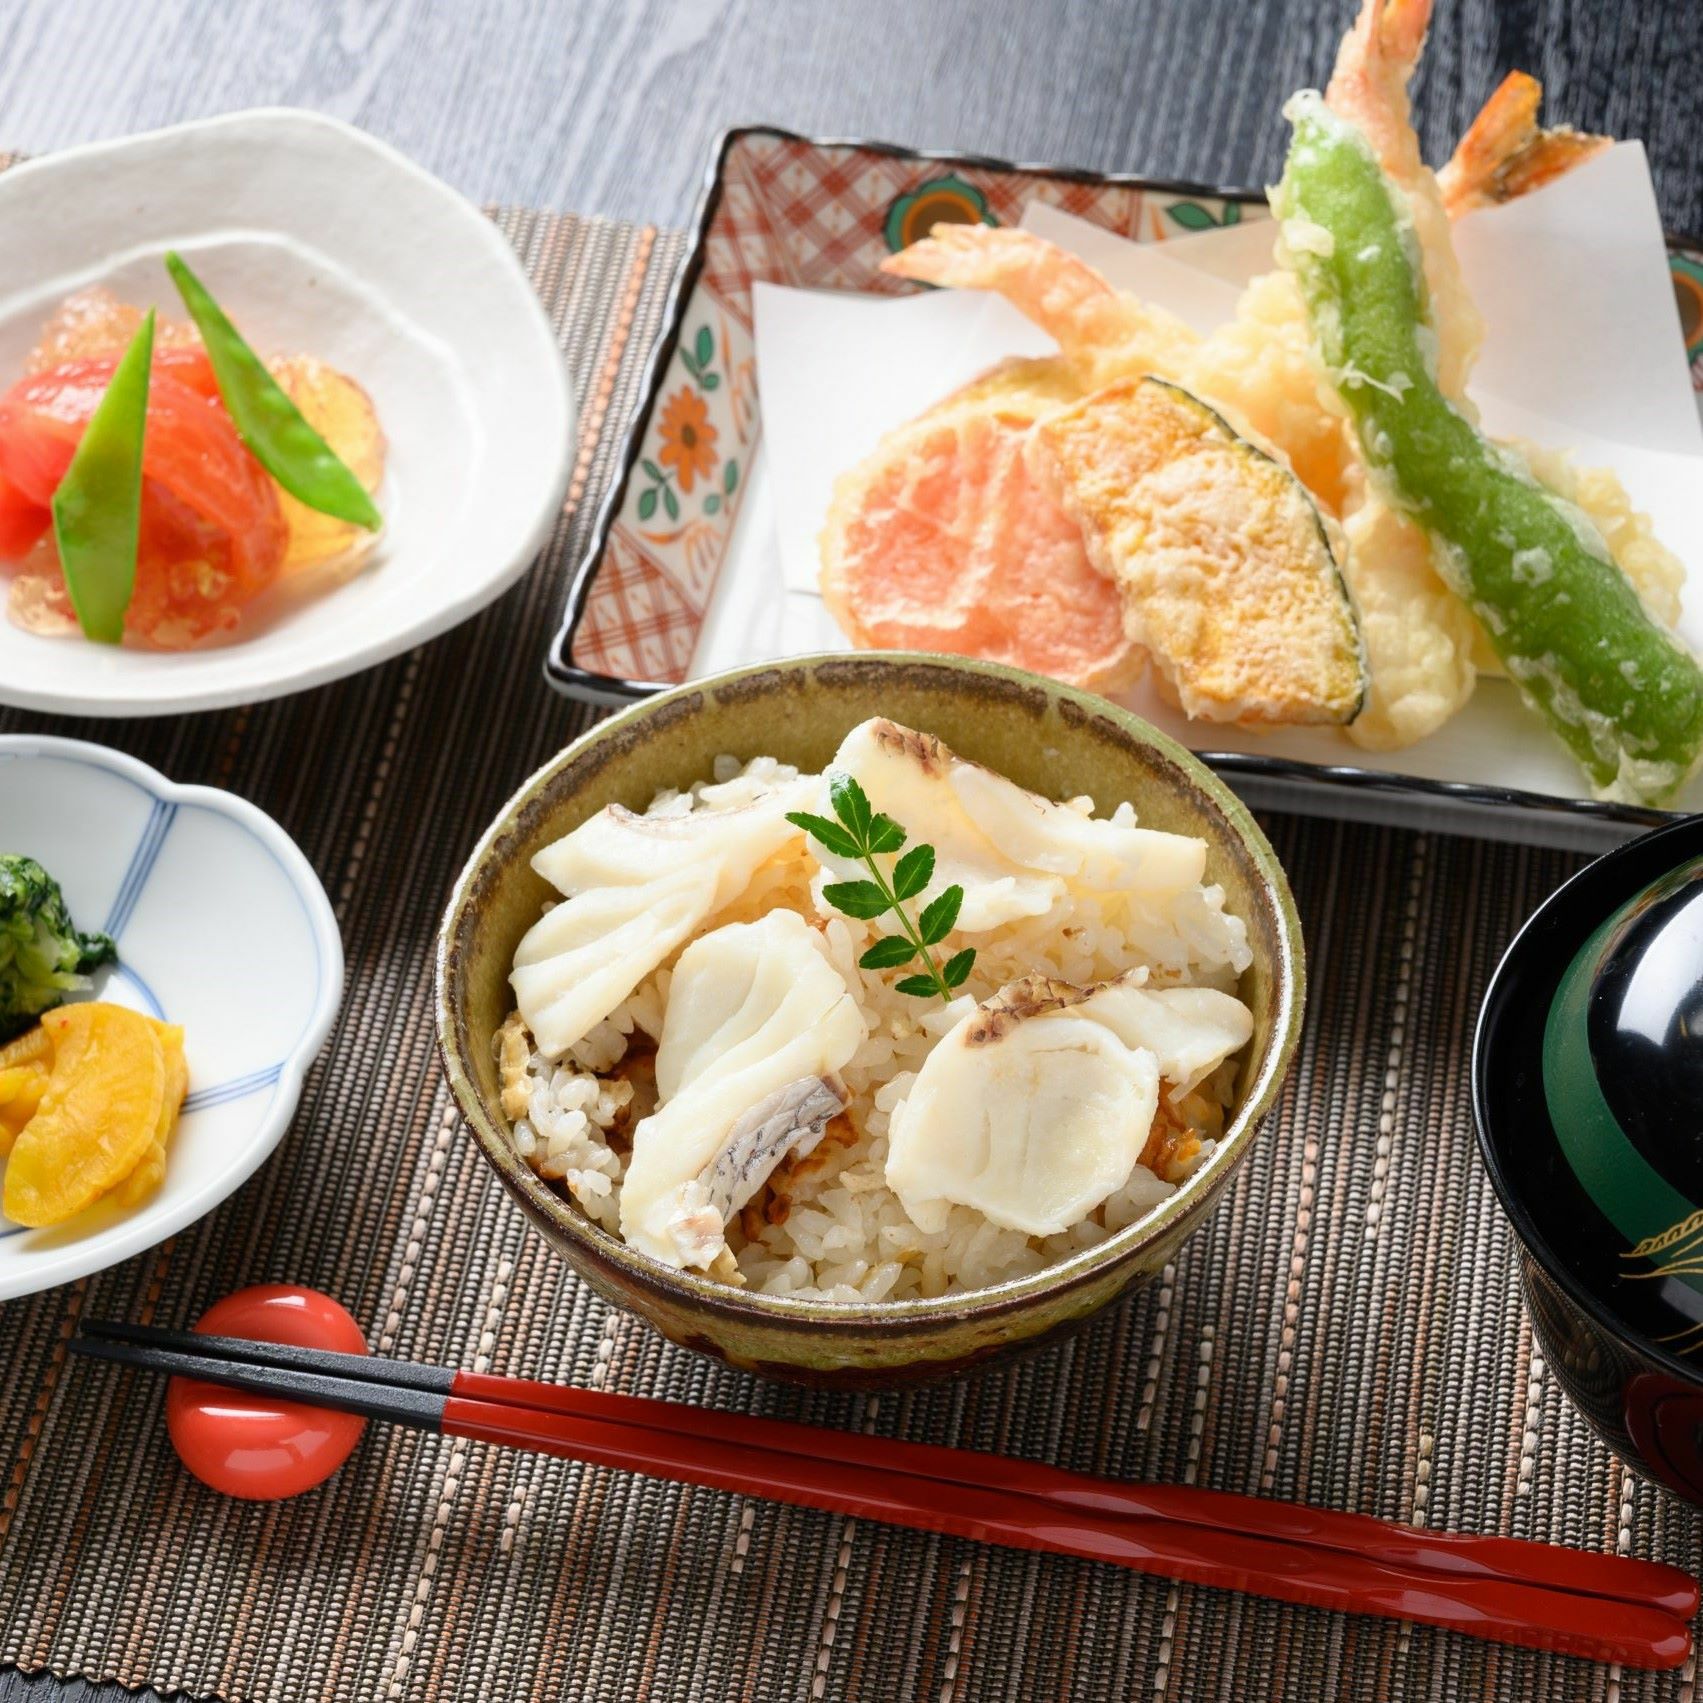 本日の献立は鯛釜飯に天ぷら、お出汁トマトサラダ、味噌汁で和食を堪能